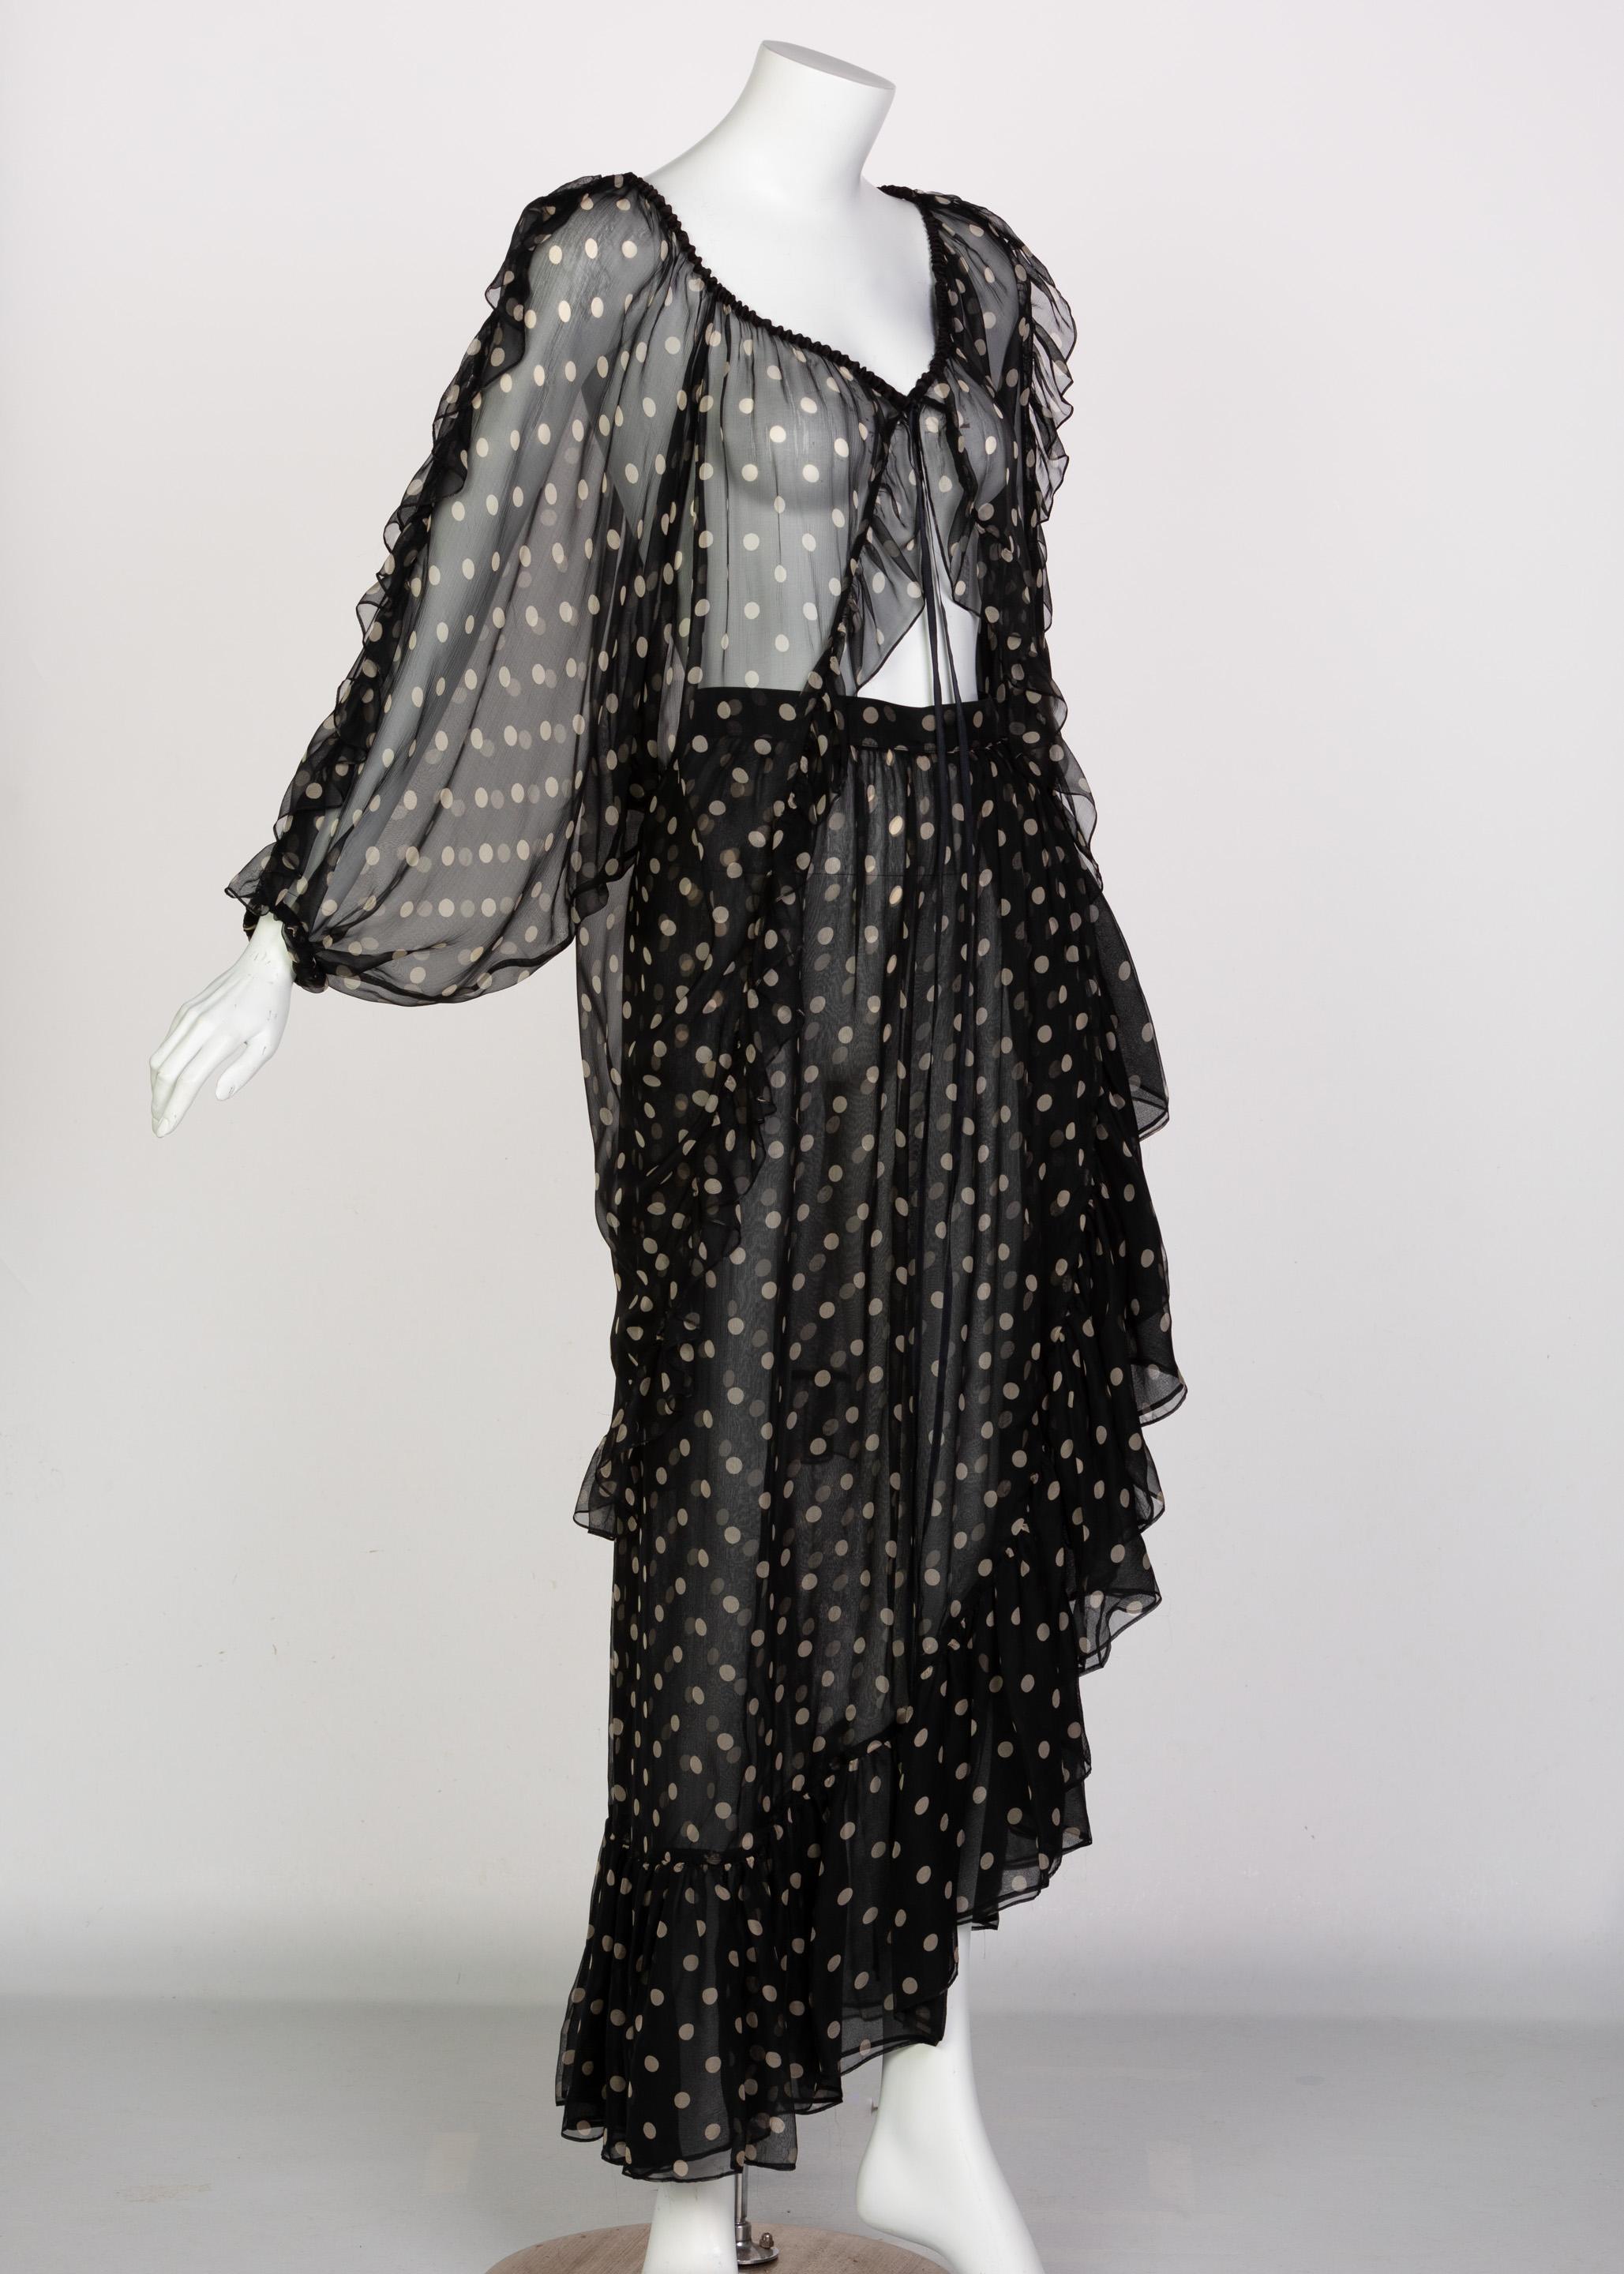 Women's  Yves Saint Laurent Black Beige Polka Dot Ruffle Jacket Top Skirt Set YSL 1980s